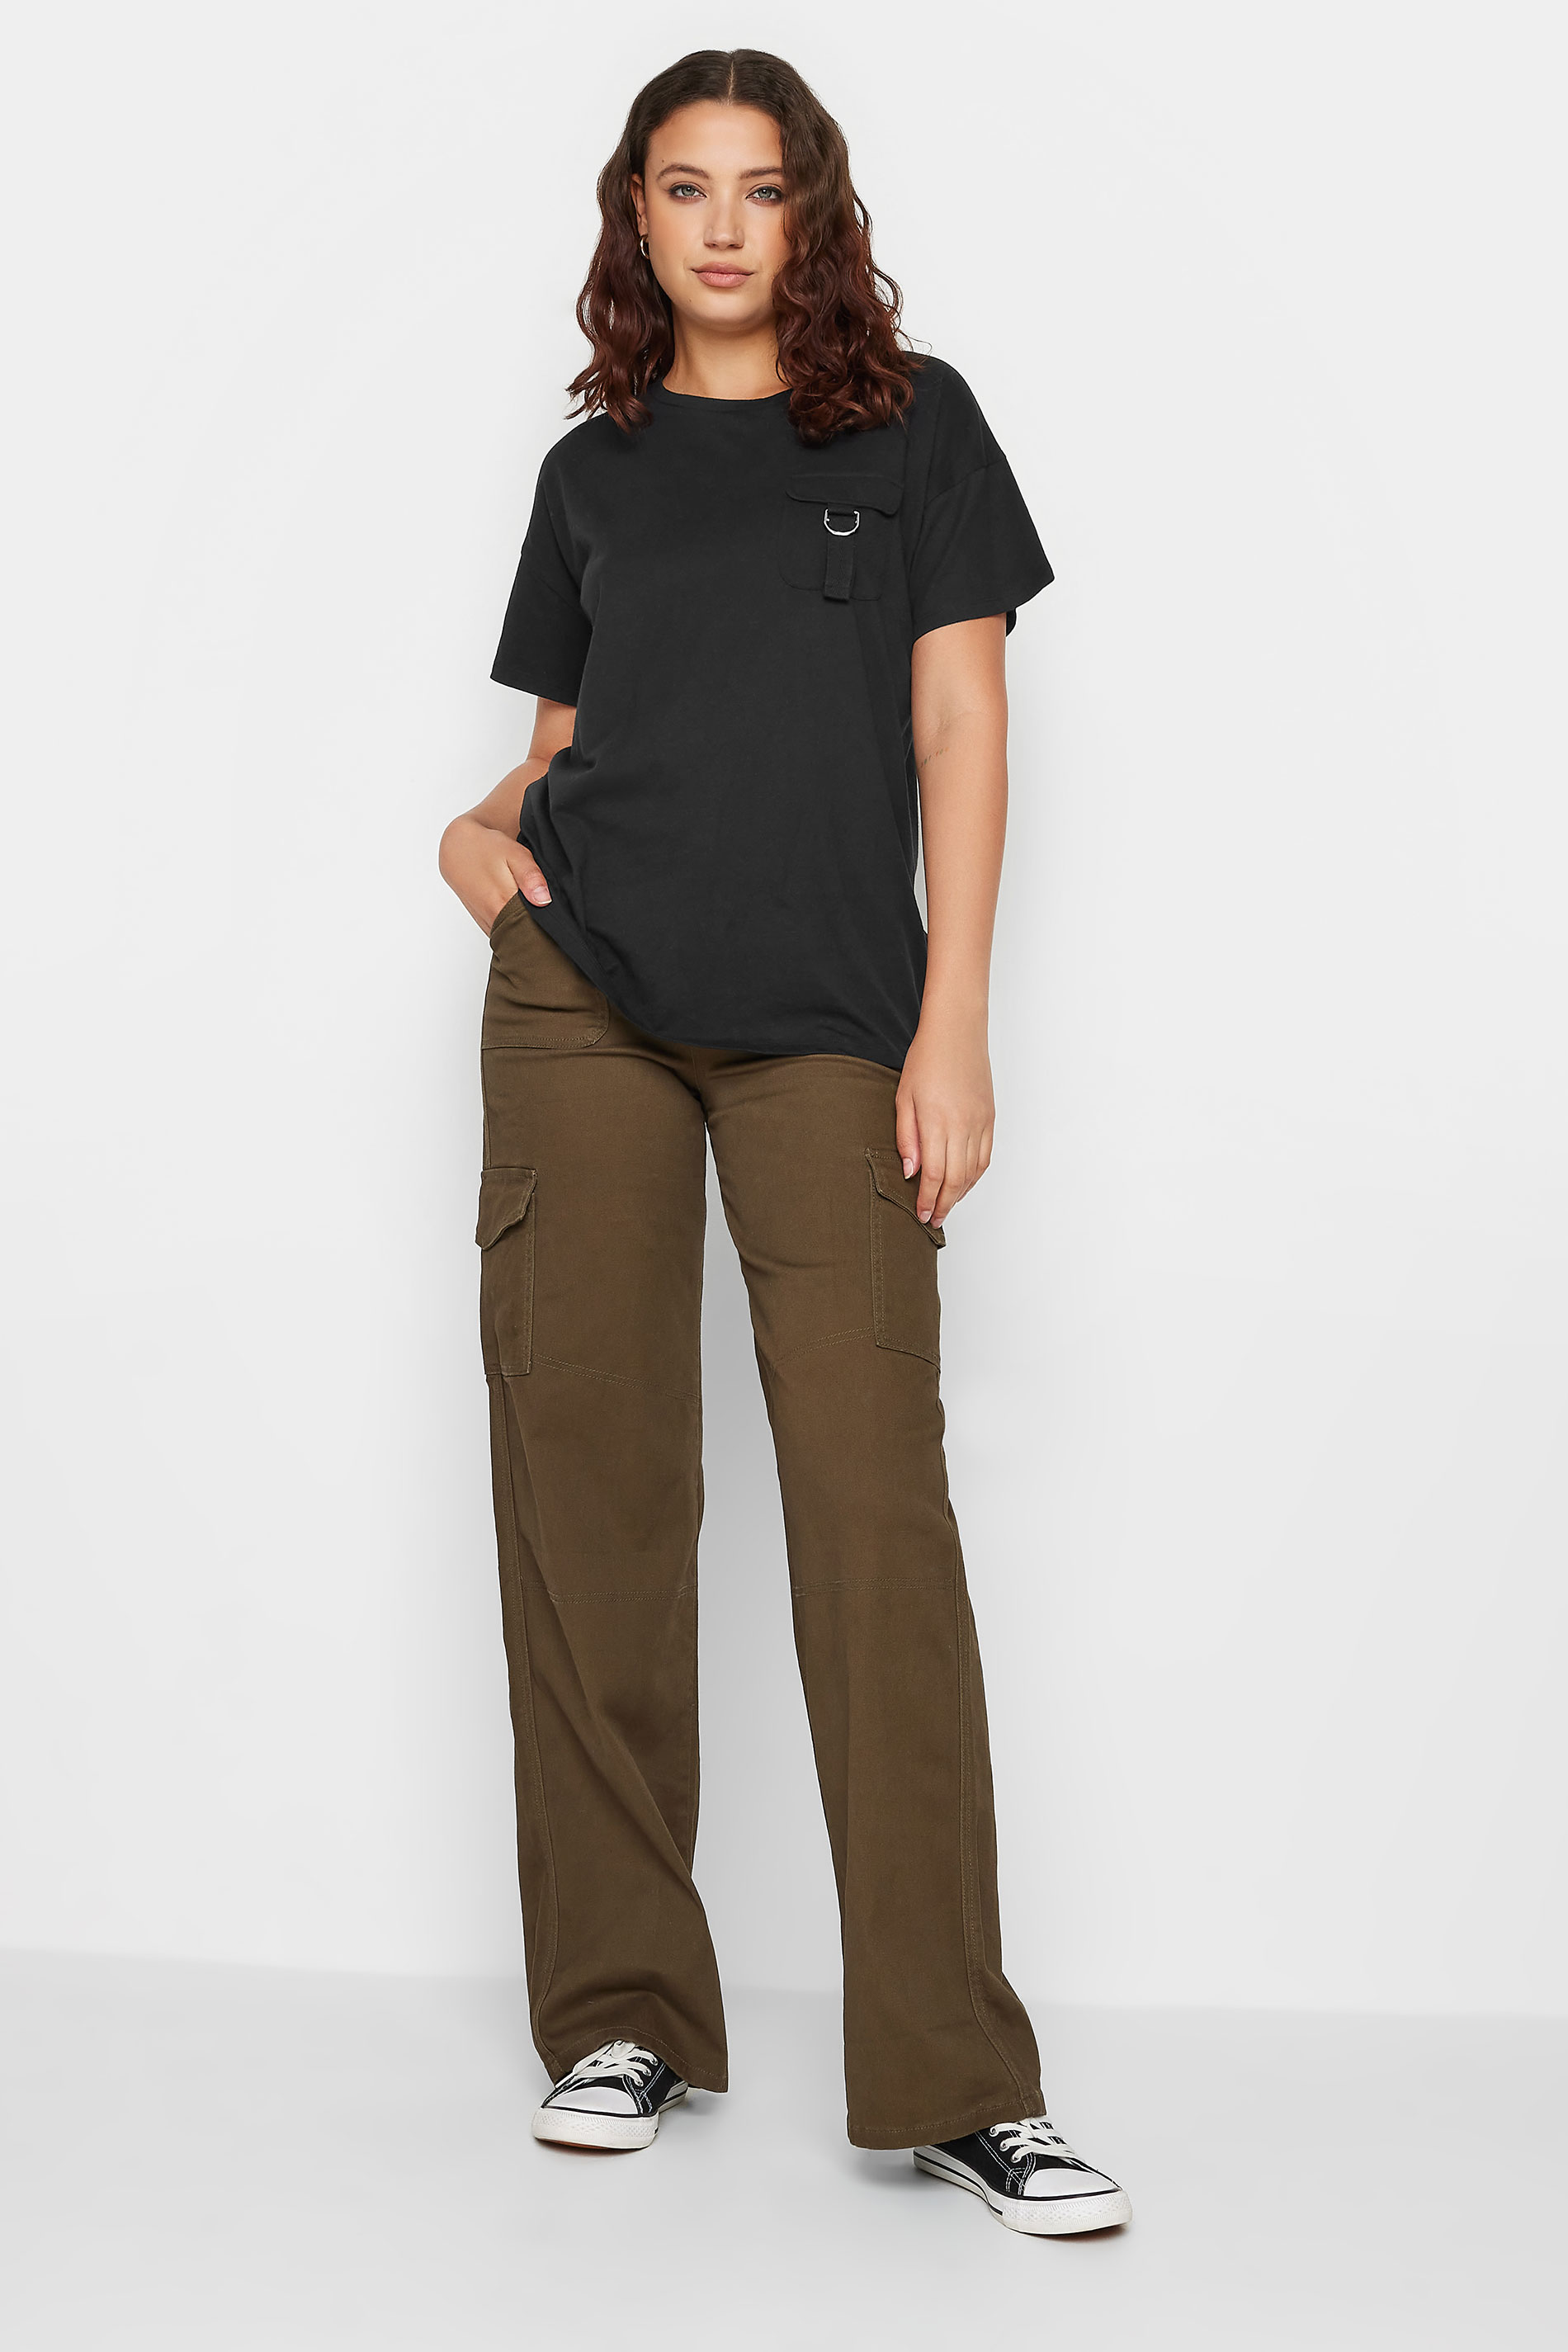 LTS Tall Black Utility Pocket Cotton T-Shirt | Long Tall Sally 3